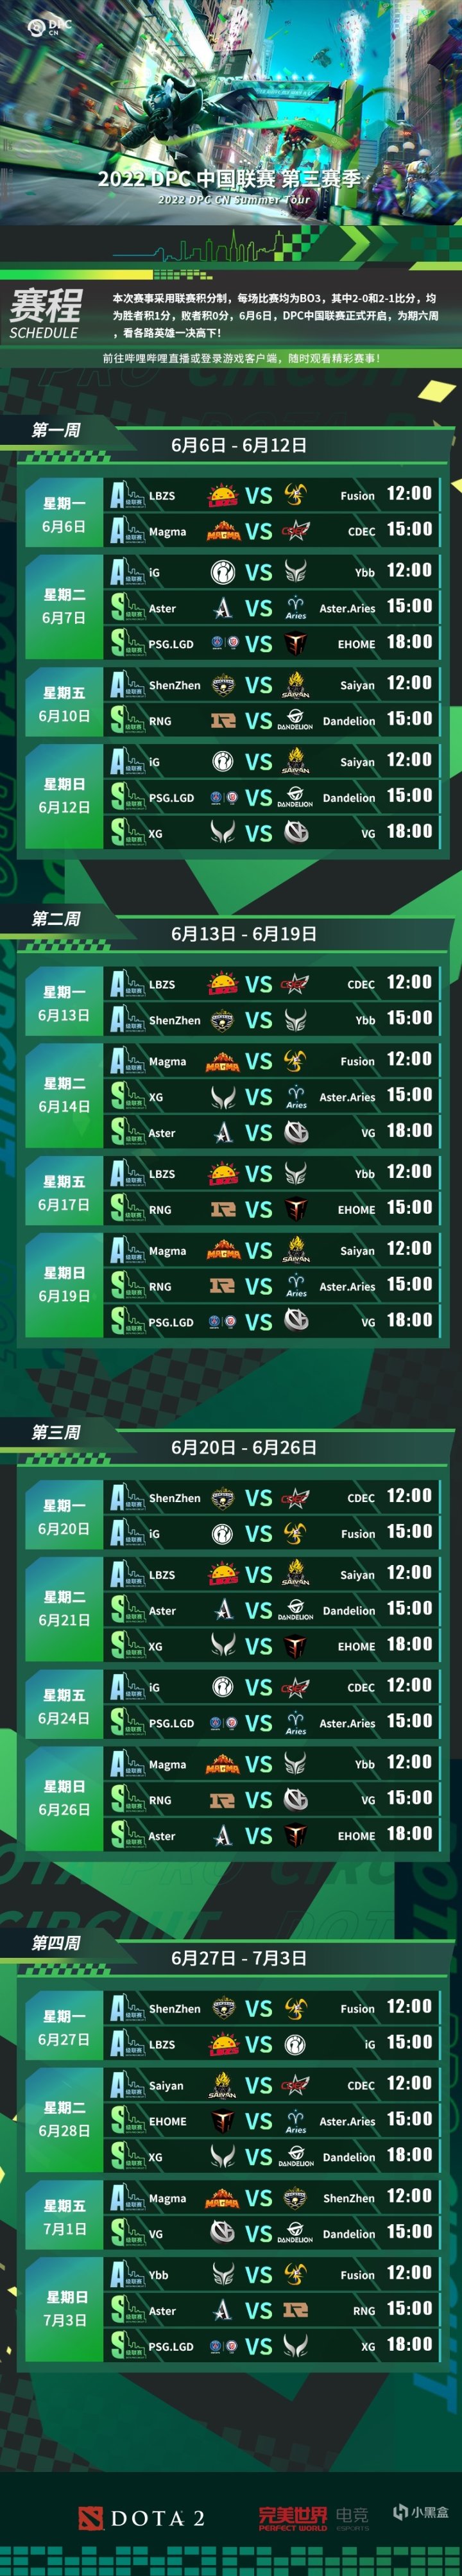 【刀塔2】DPC中國聯賽第三賽季B站獨播中！參與預測贏取獎勵